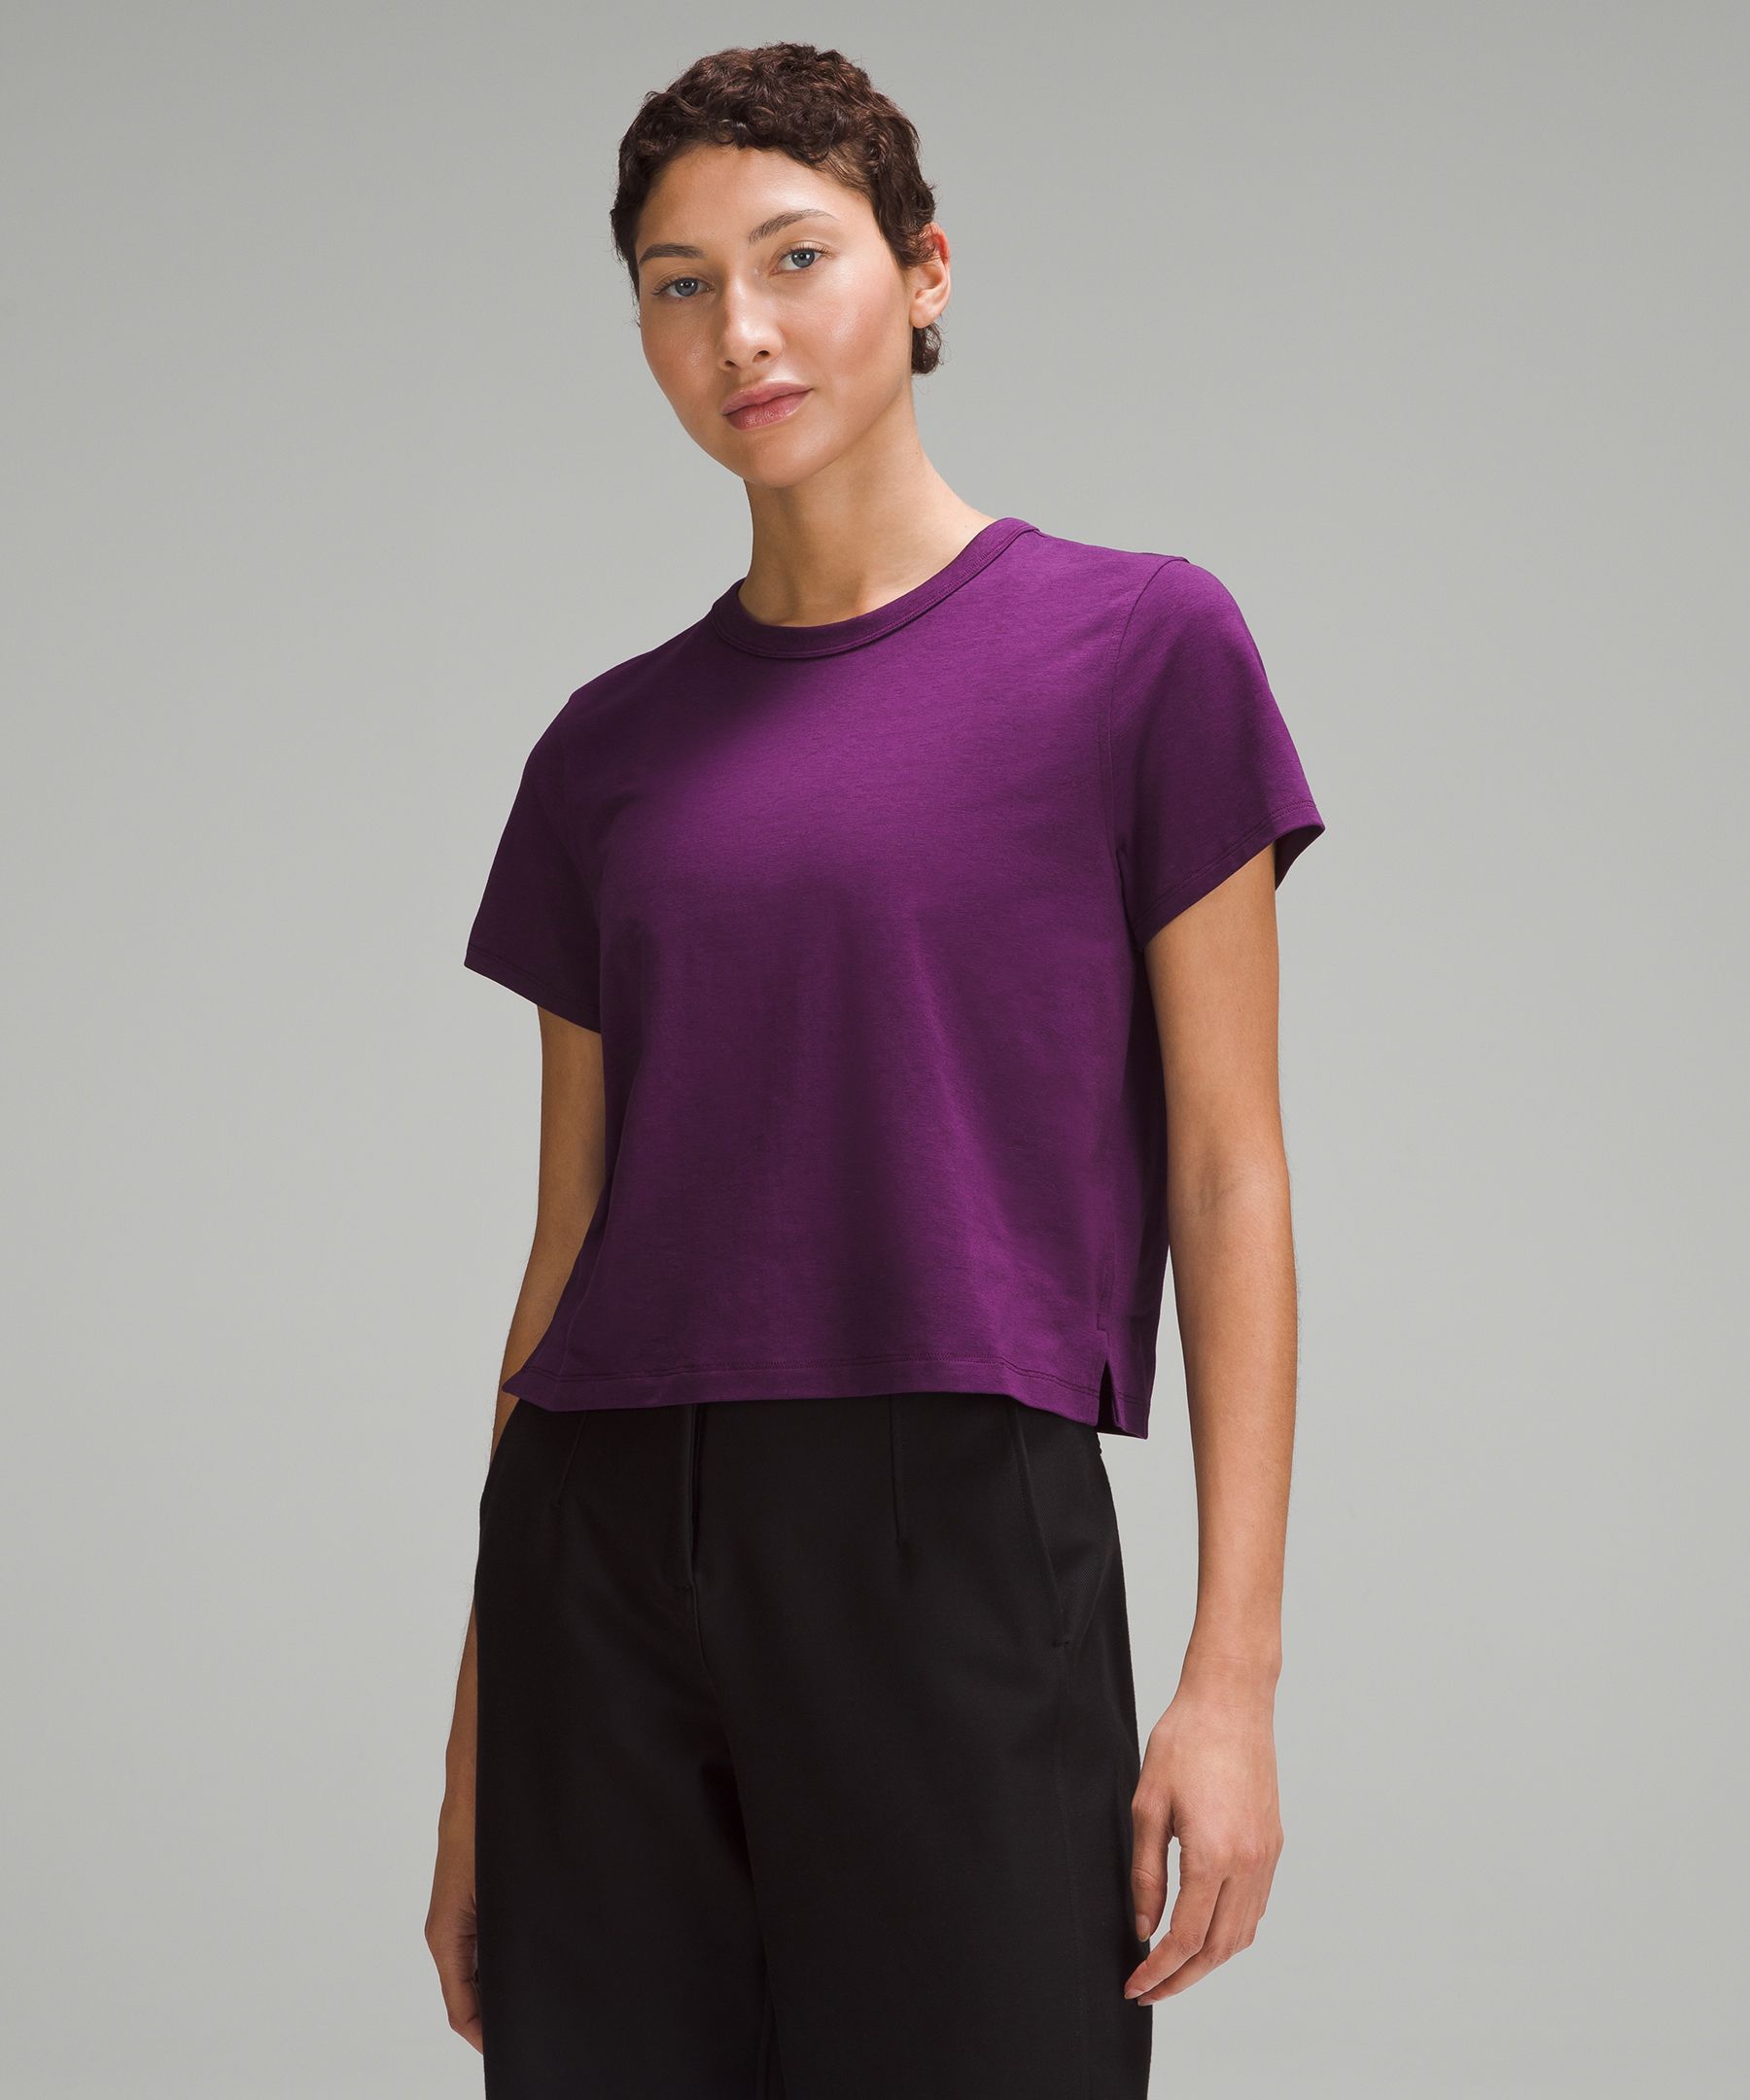 Lululemon Classic-fit Cotton-blend T-shirt